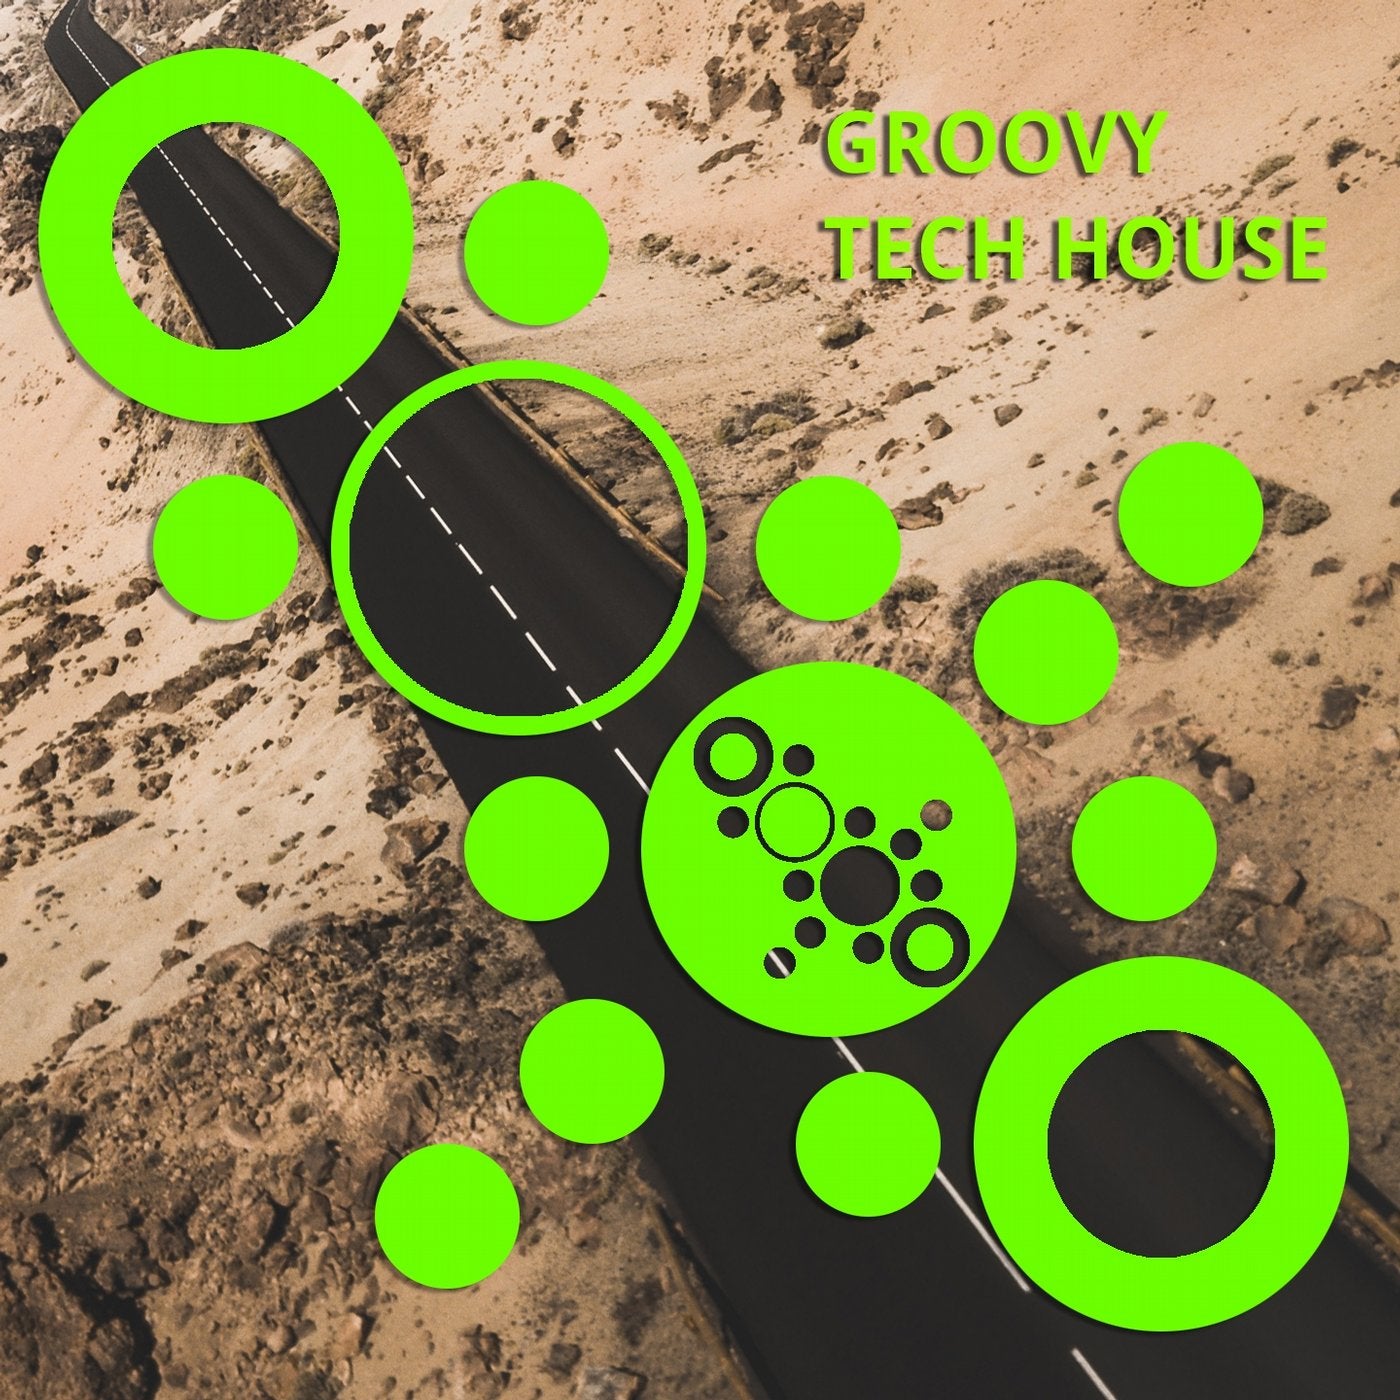 Groovy Tech House